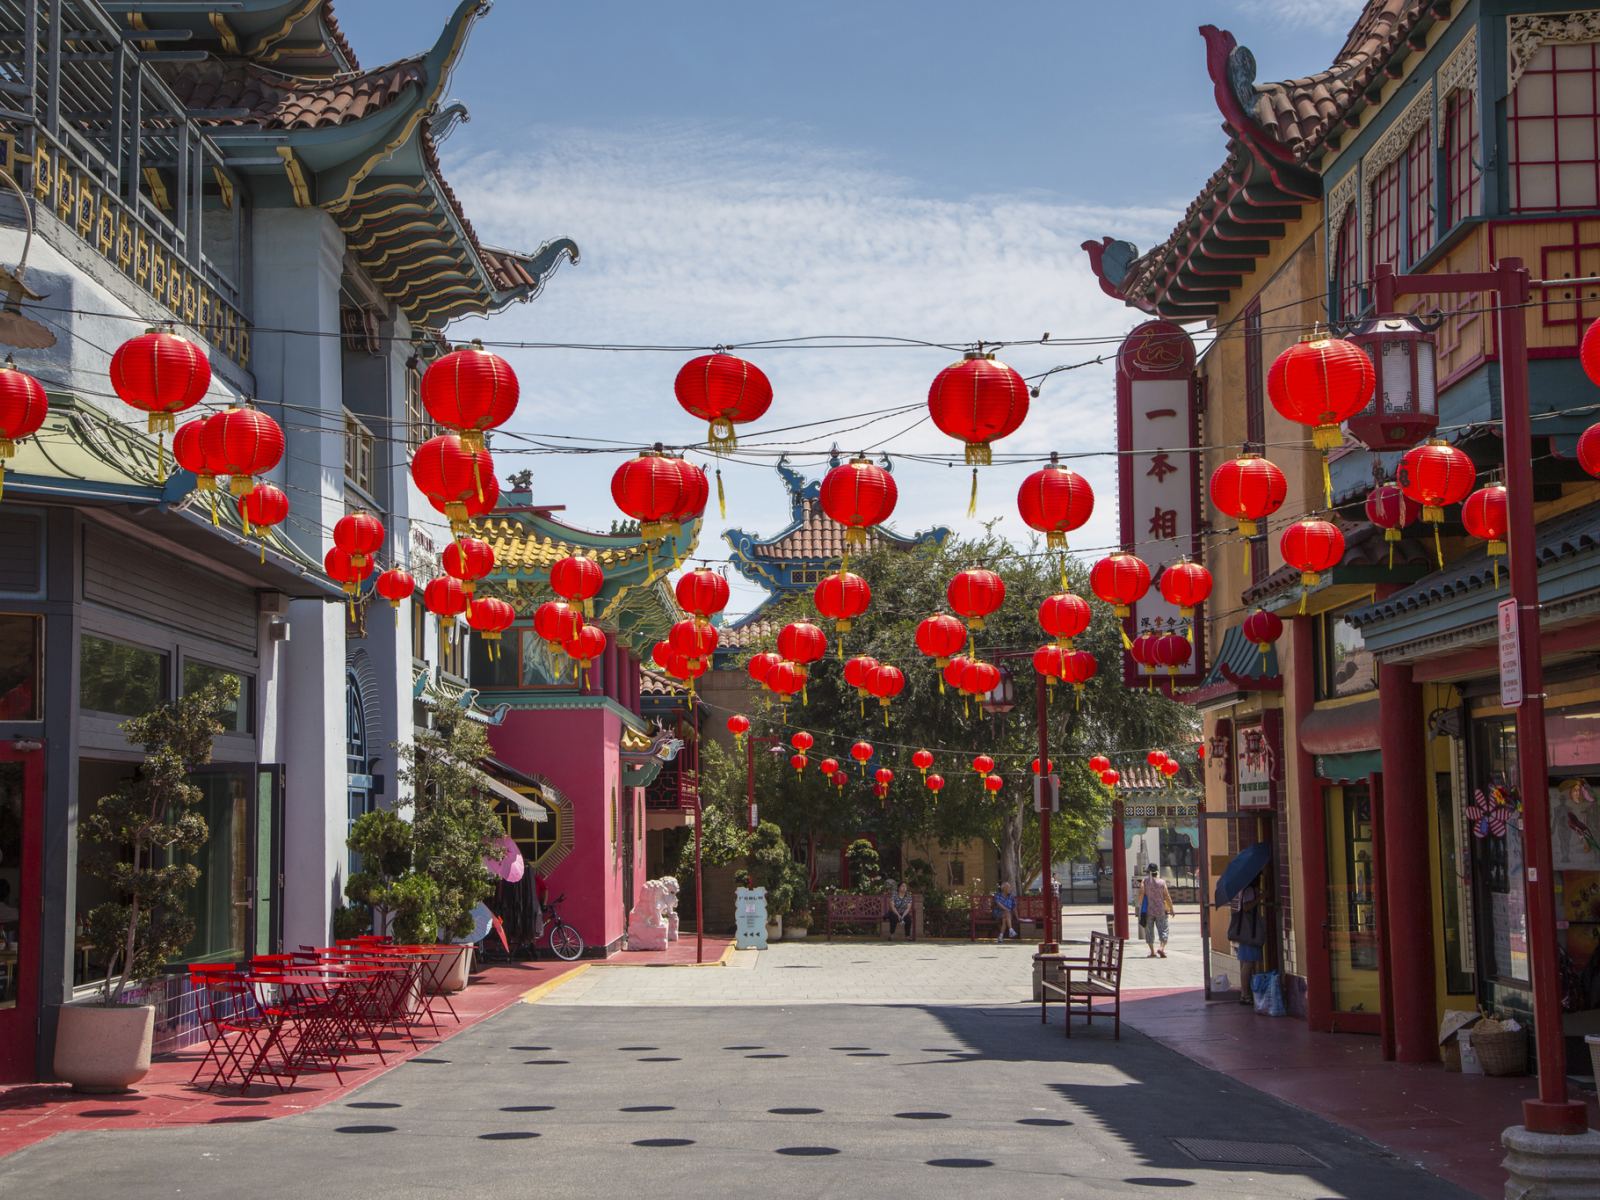 China town - Con phố của người hoa tại Kualalumpur